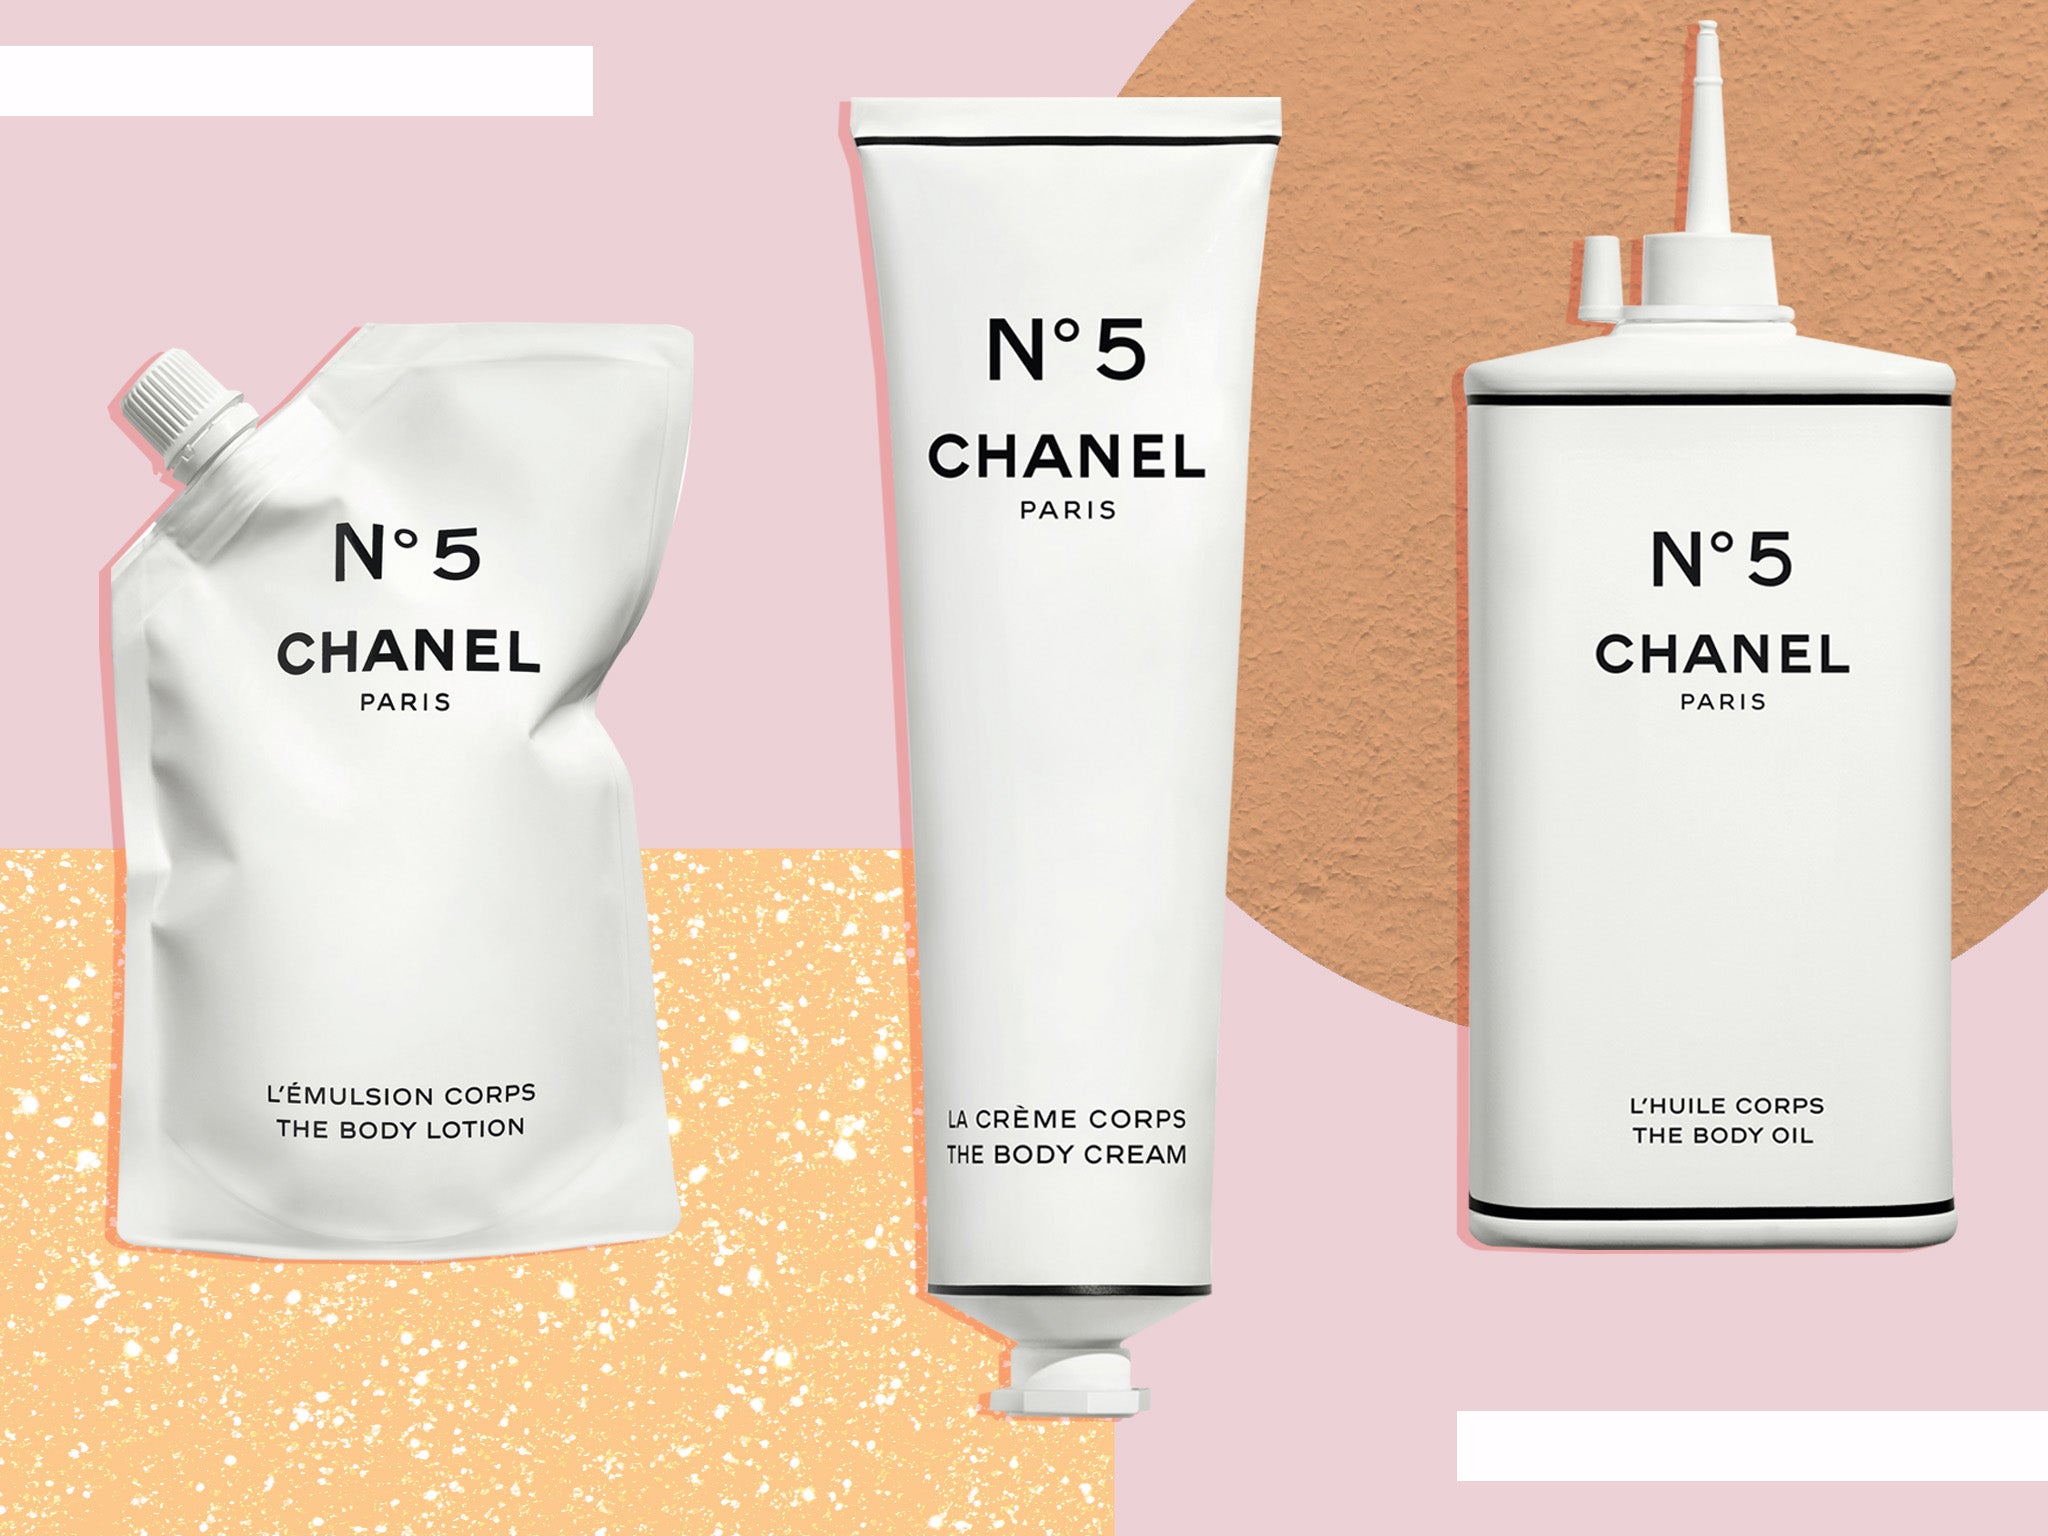 NEW Chanel Chance Eau Fraiche EDT Spray 100ml Perfume 3145891364200  eBay